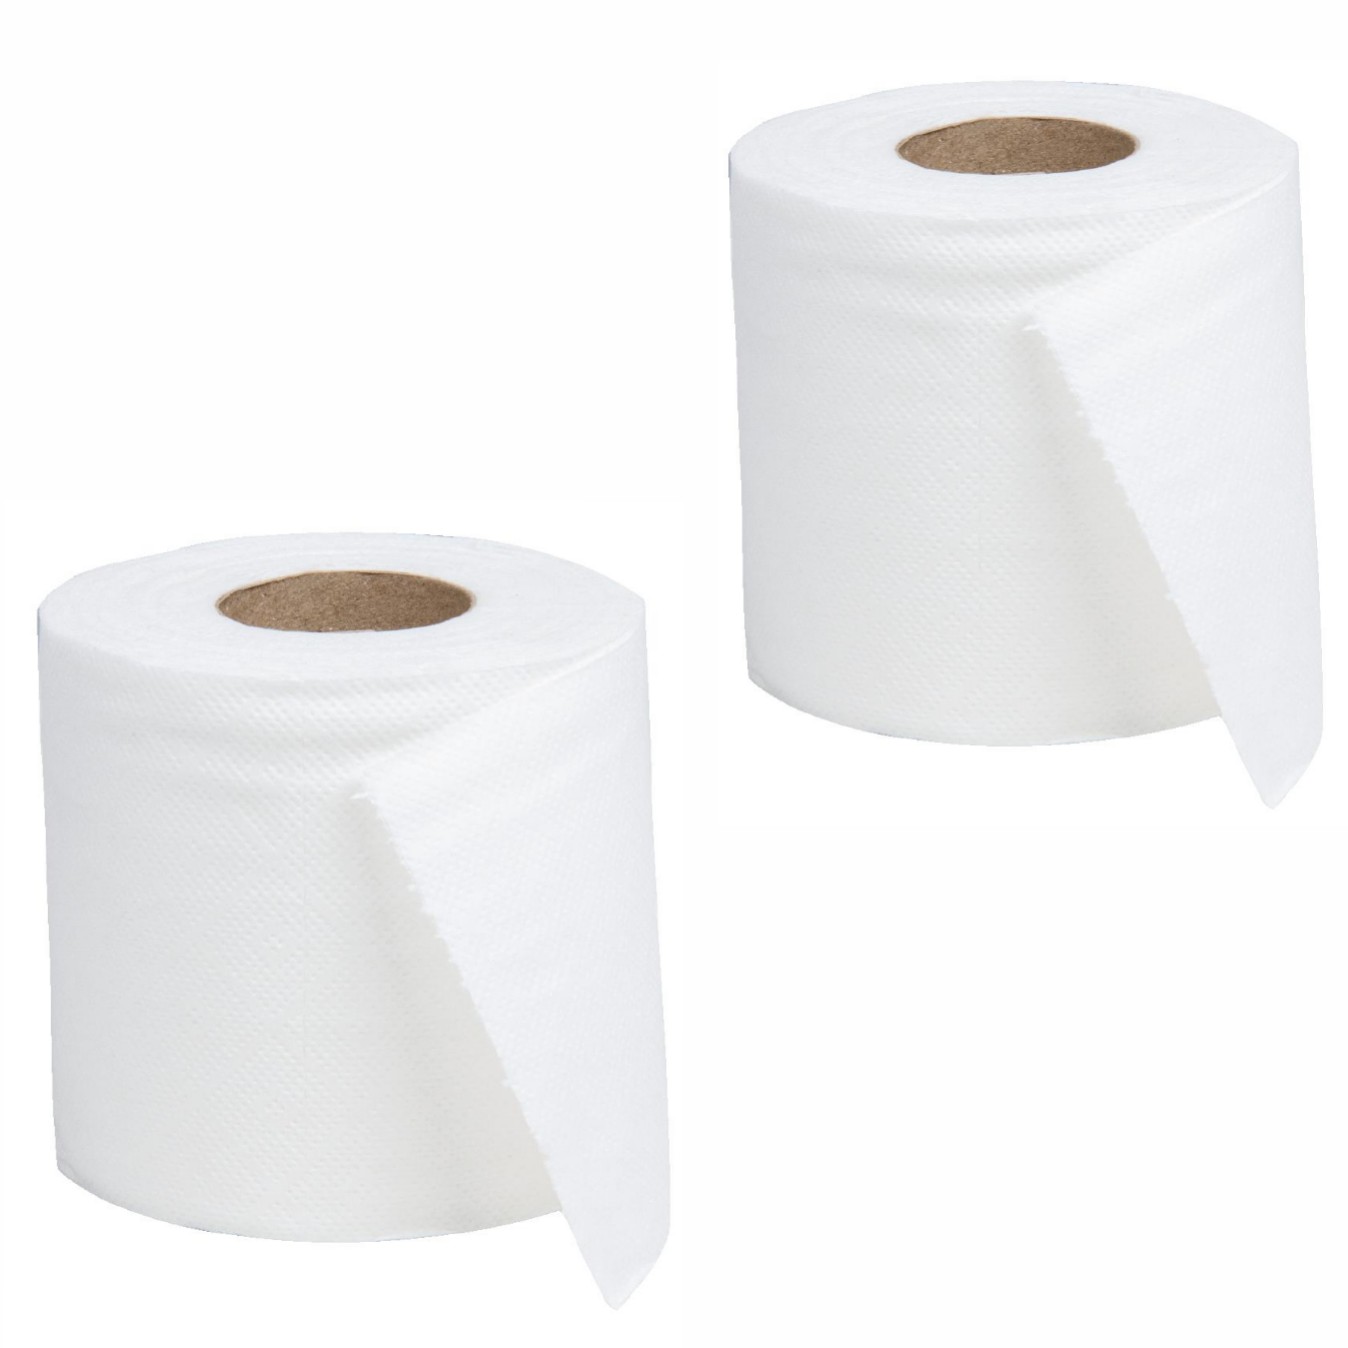 دستمال توالت باجیکا مدل WF بسته 2 عددی